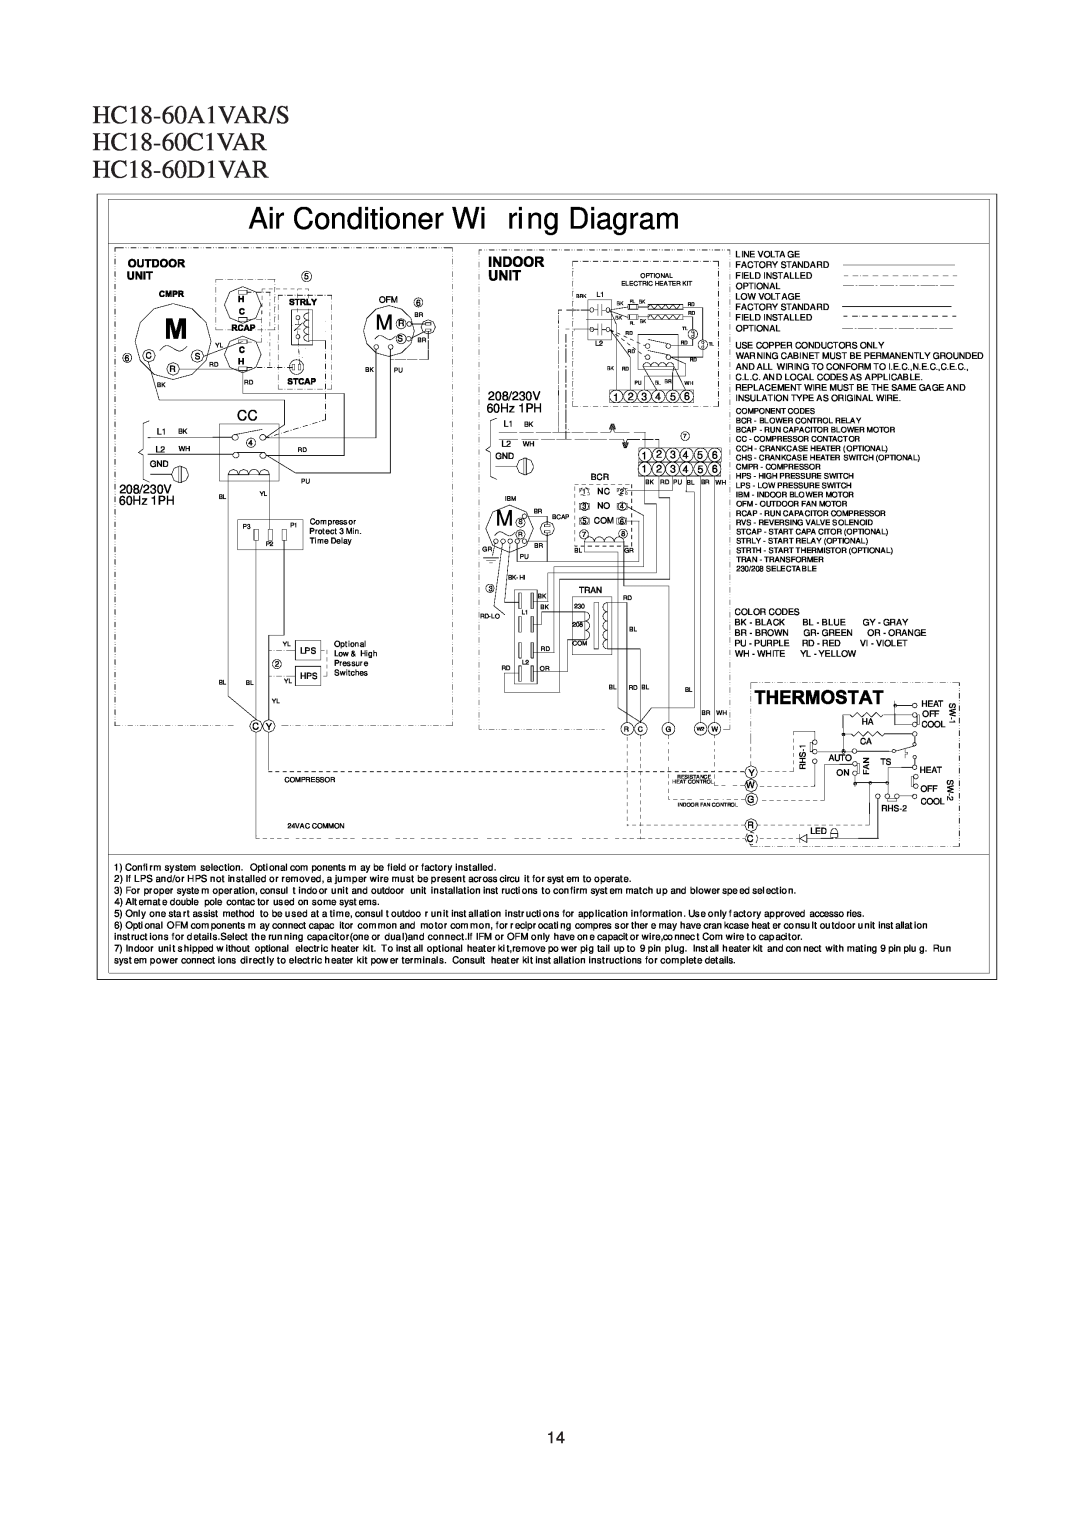 Haier operation manual HC18-60A1VAR/S HC18-60C1VAR HC18-60D1VAR, Air Conditioner Wi ring Diagram, 208/230V, 60Hz 1PH 